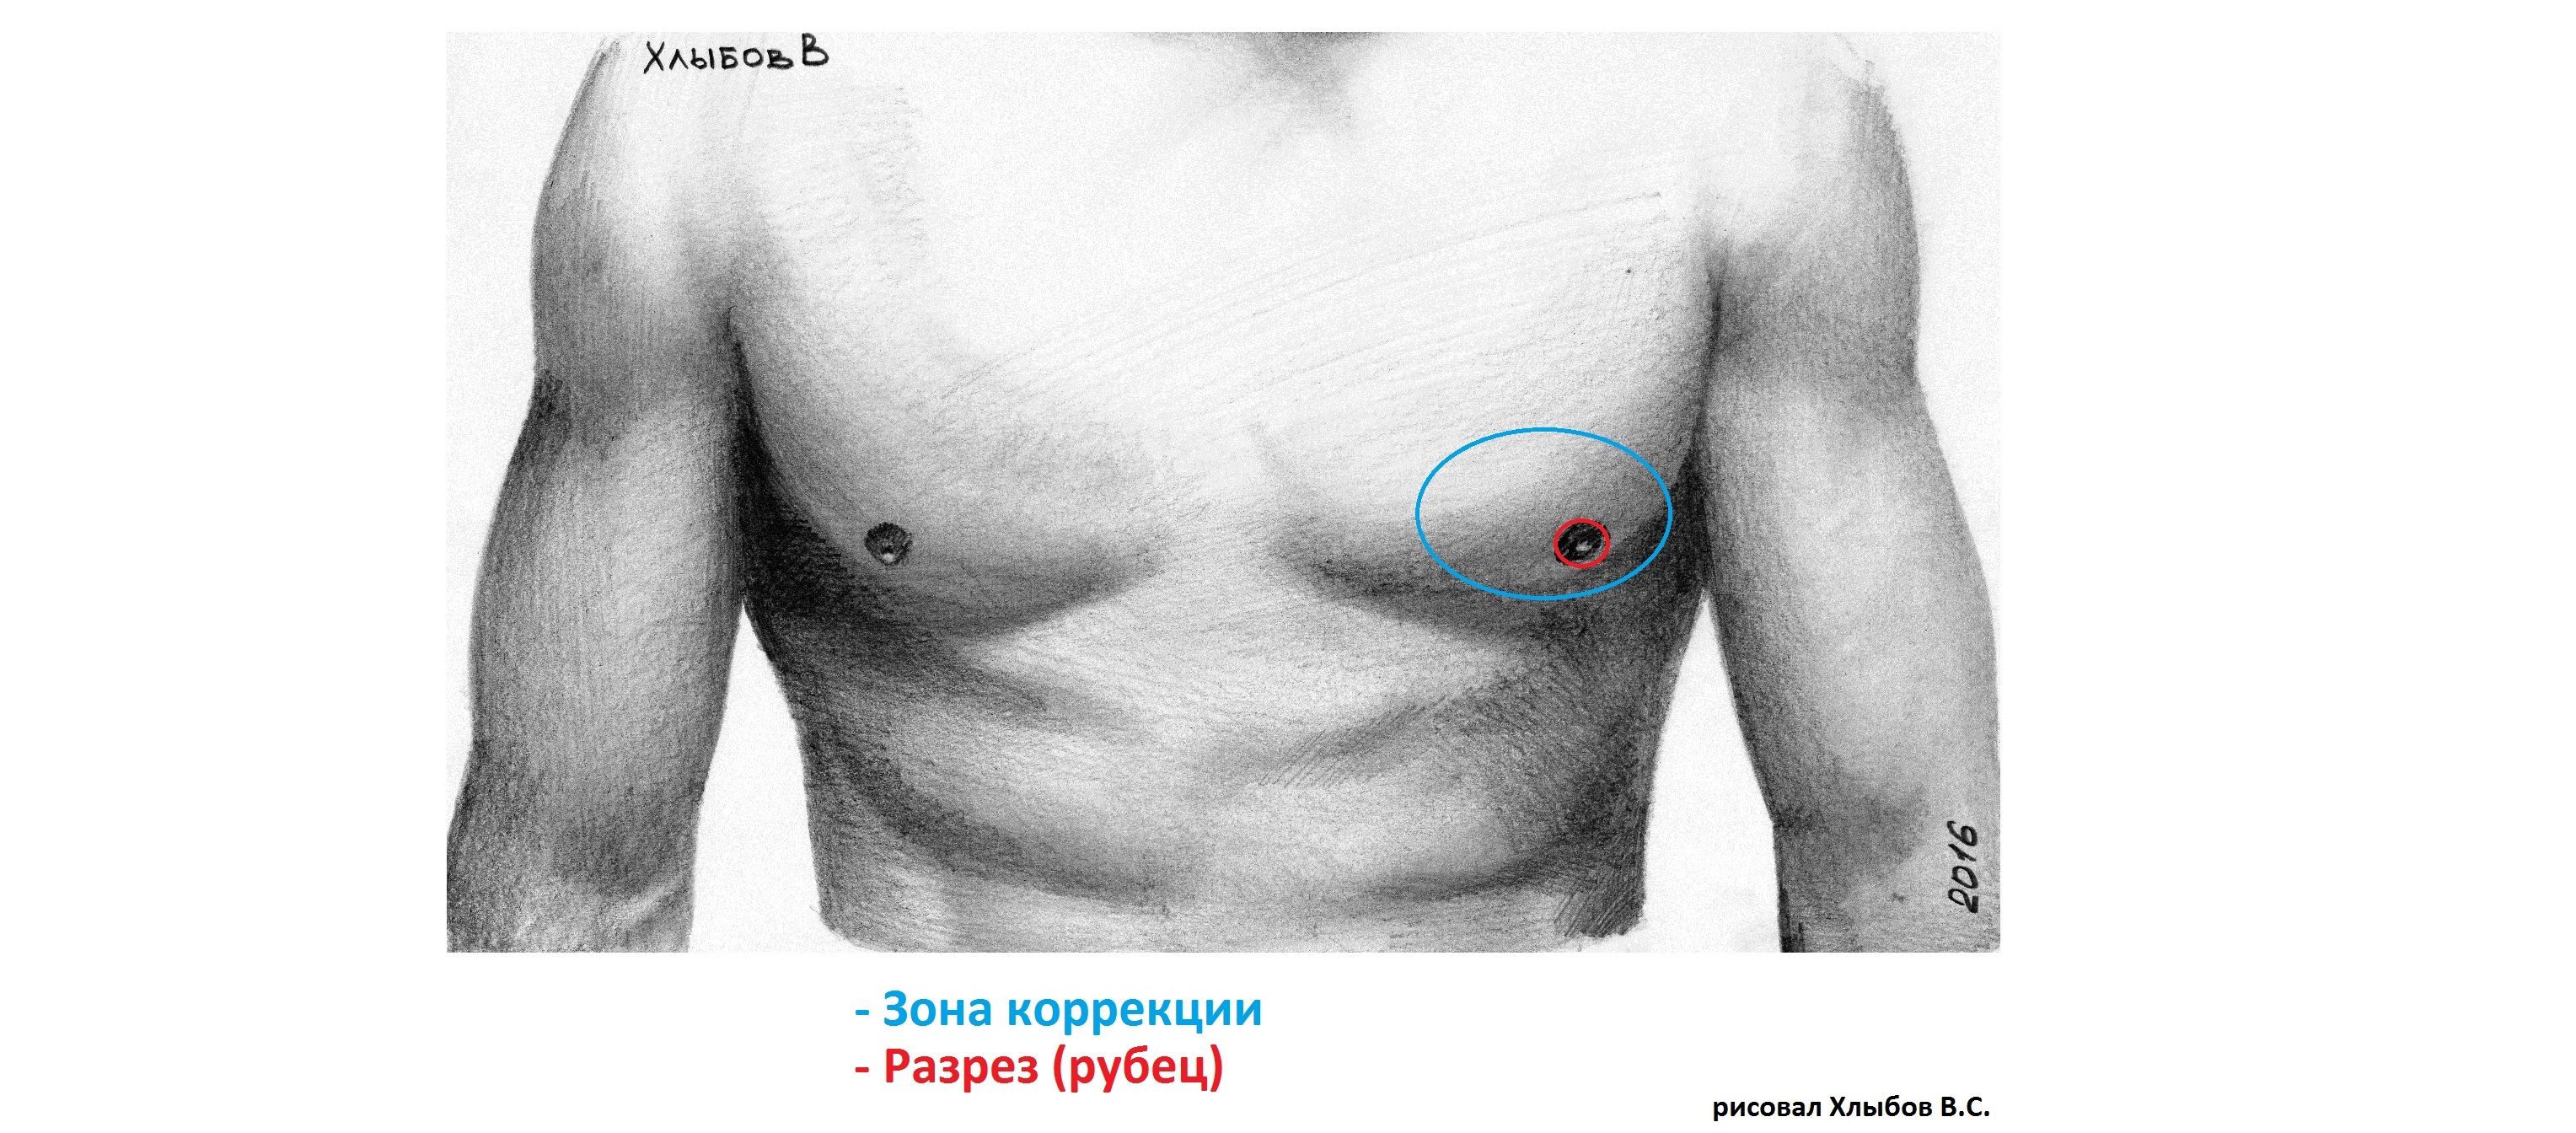 опухоль в районе груди у мужчин фото 44